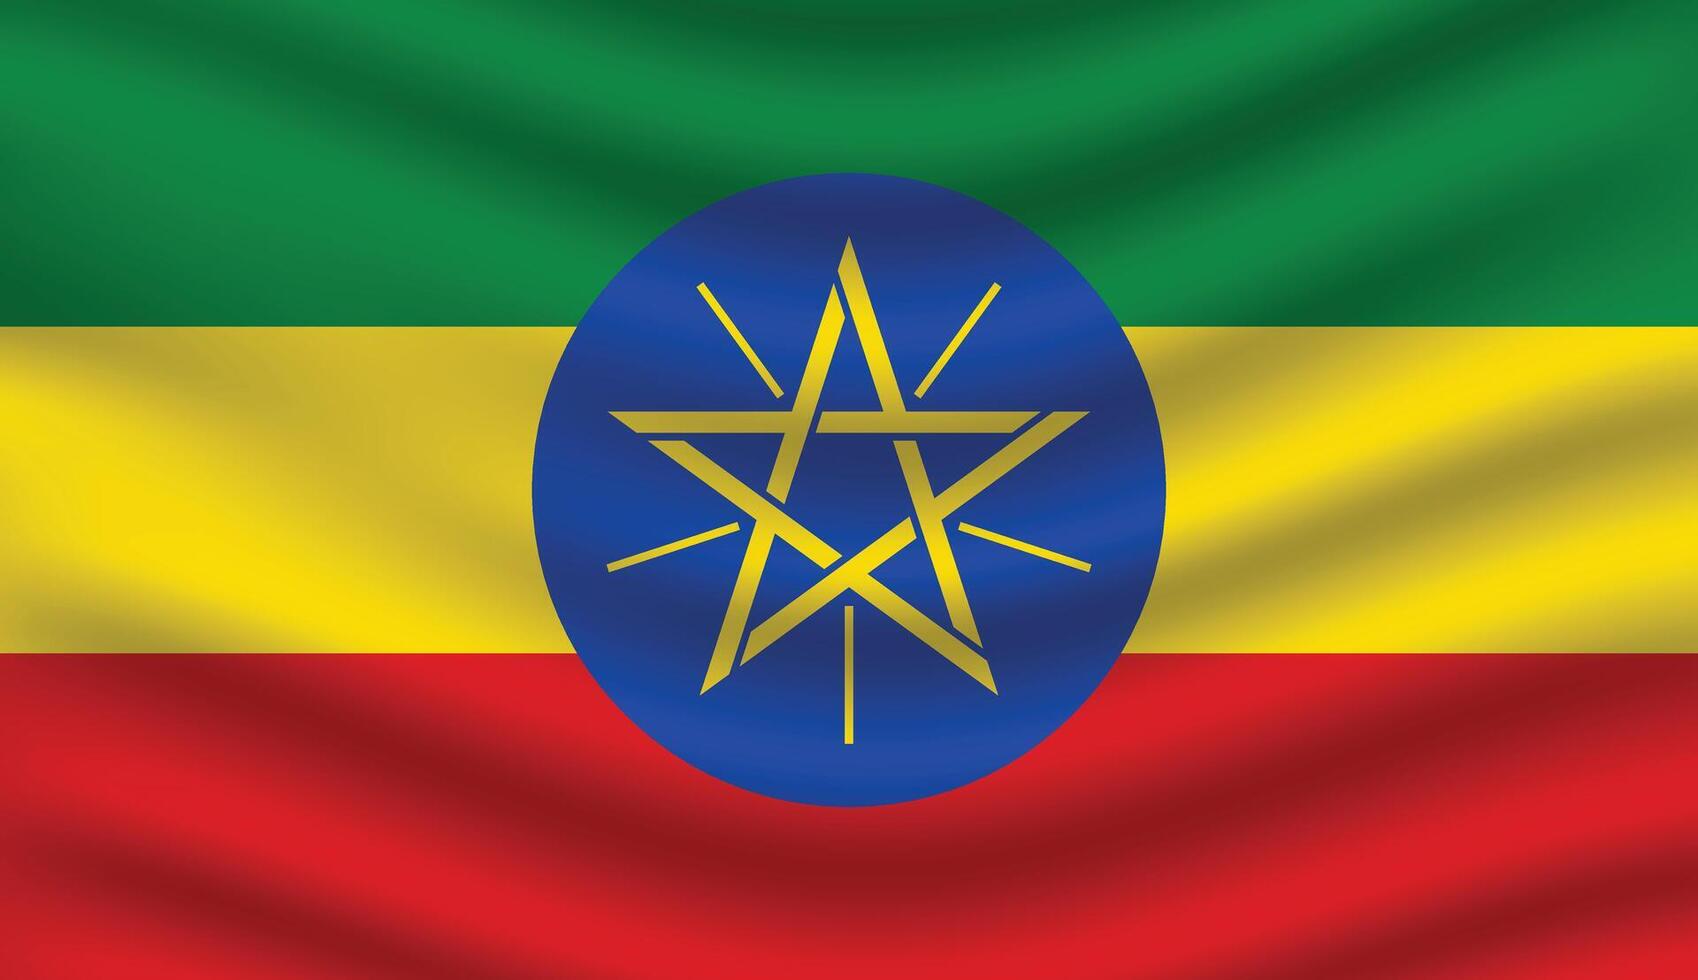 Flat Illustration of Ethiopia national flag. Ethiopia flag design. Ethiopia Wave flag. vector